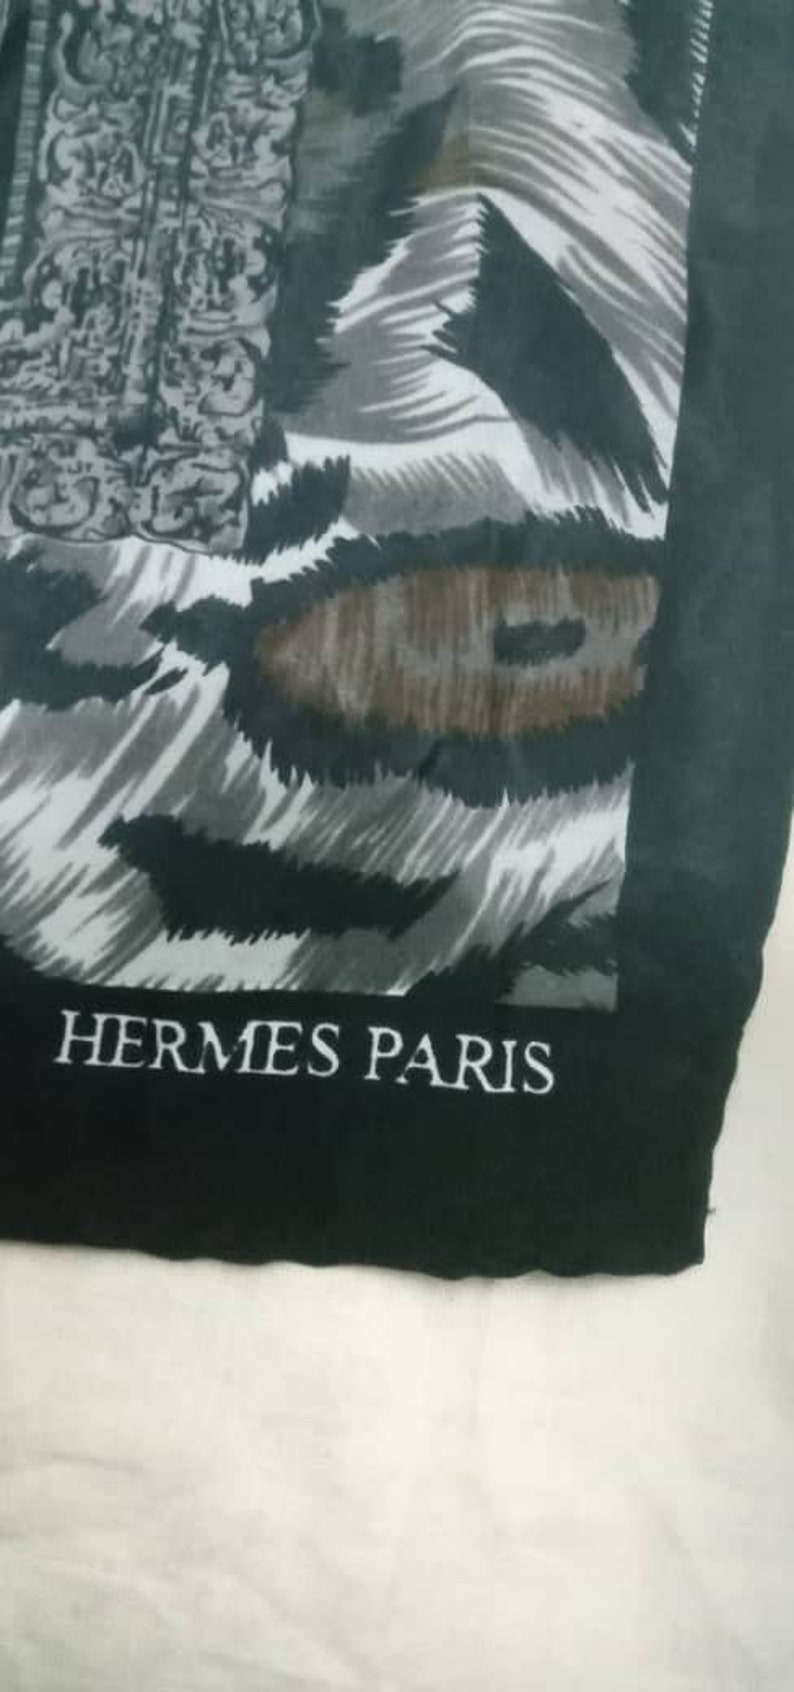 Hermes Paris scarf tiger design image 4